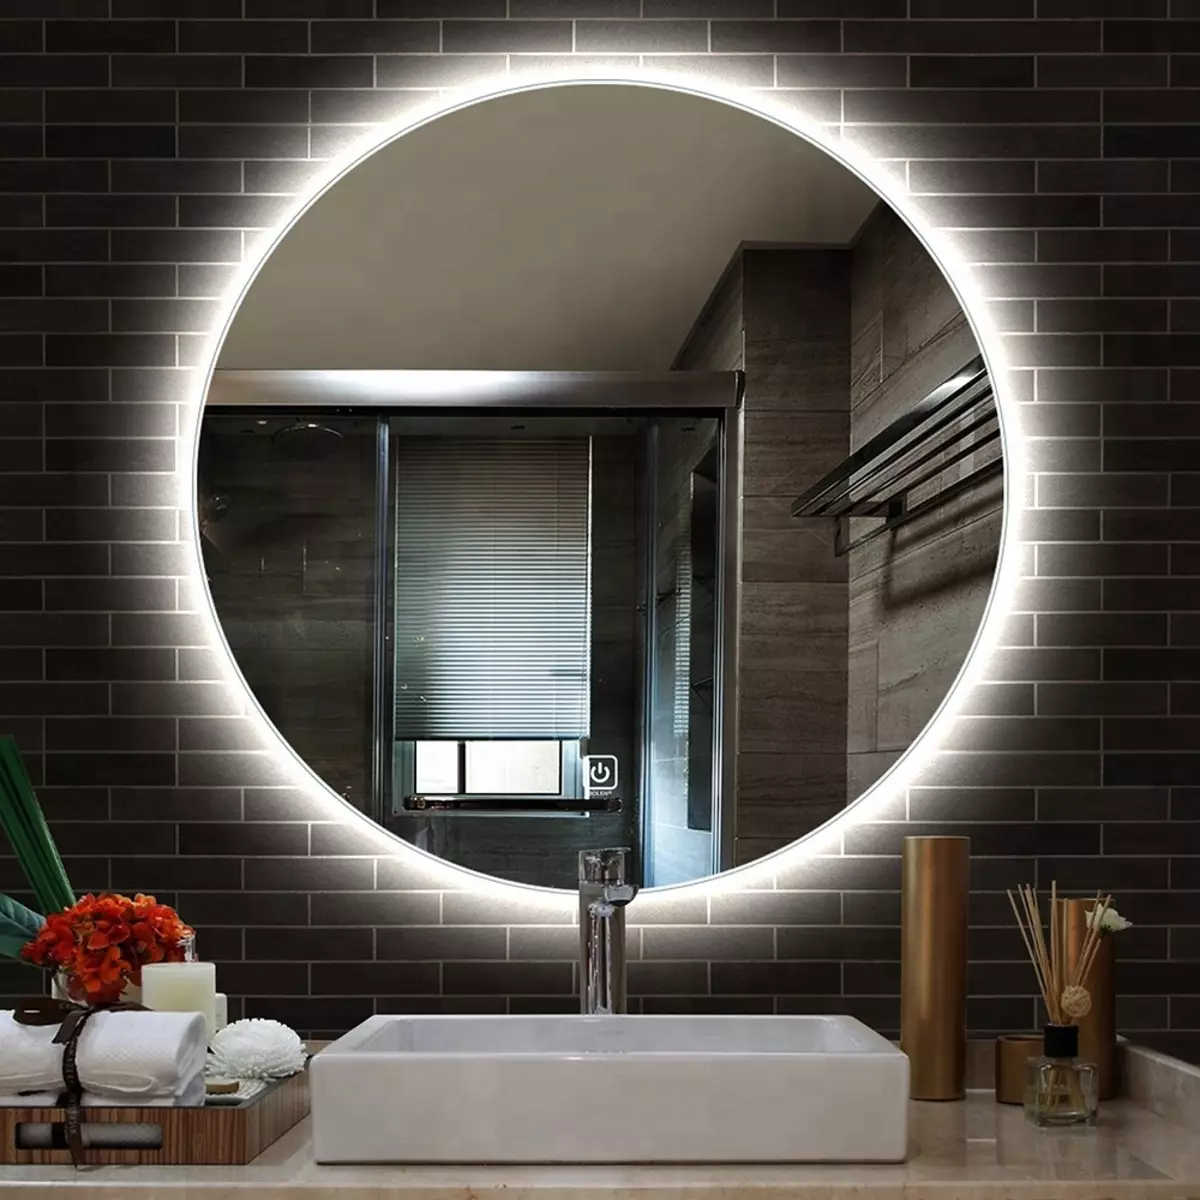 Miroir rond dans la salle de bain: miroirs design dans un cadre en bois, miroirs ronds de couleur noire et autre pour la salle de bain 10427_19